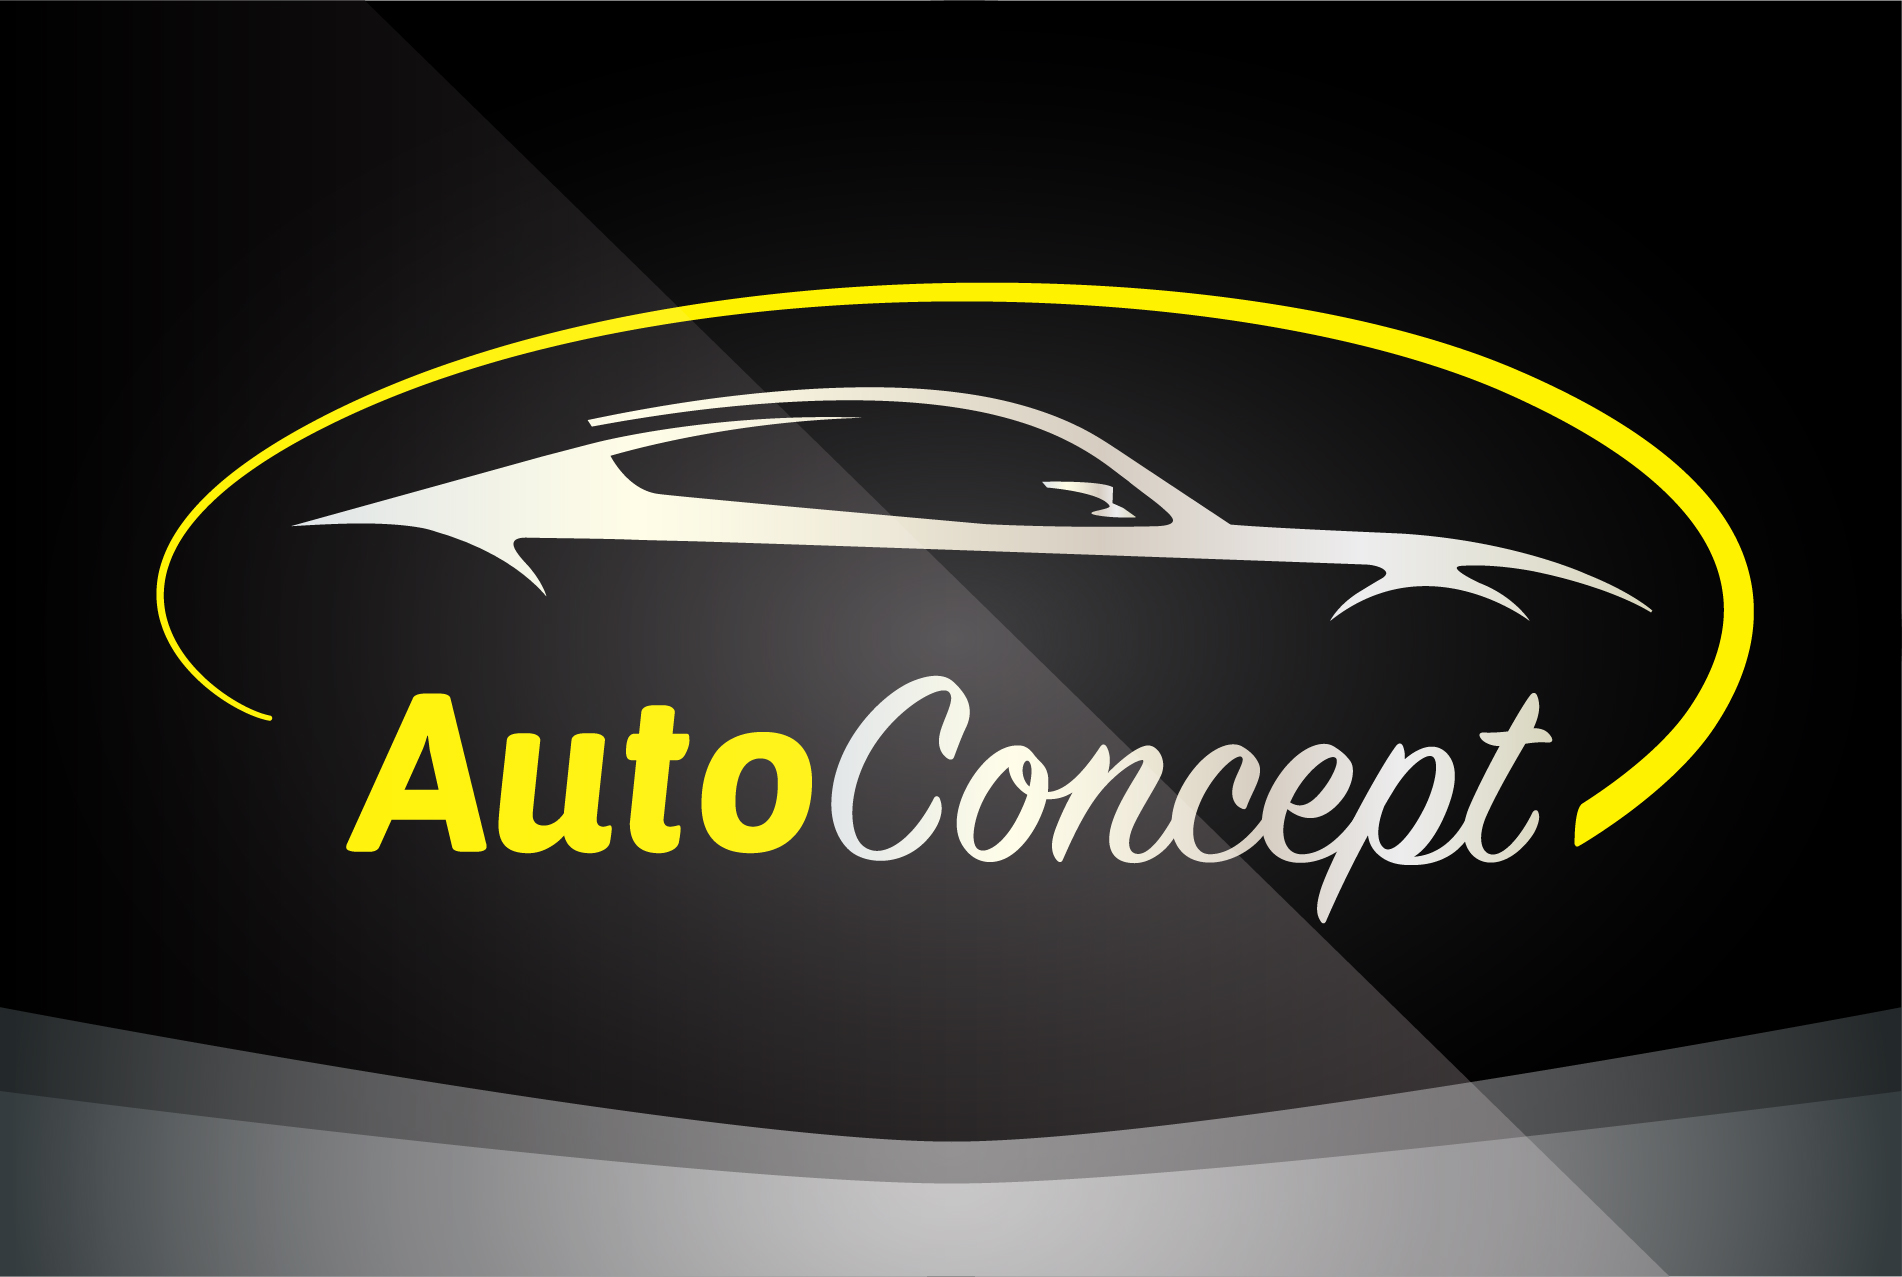 Auto company logos creative vector 09  